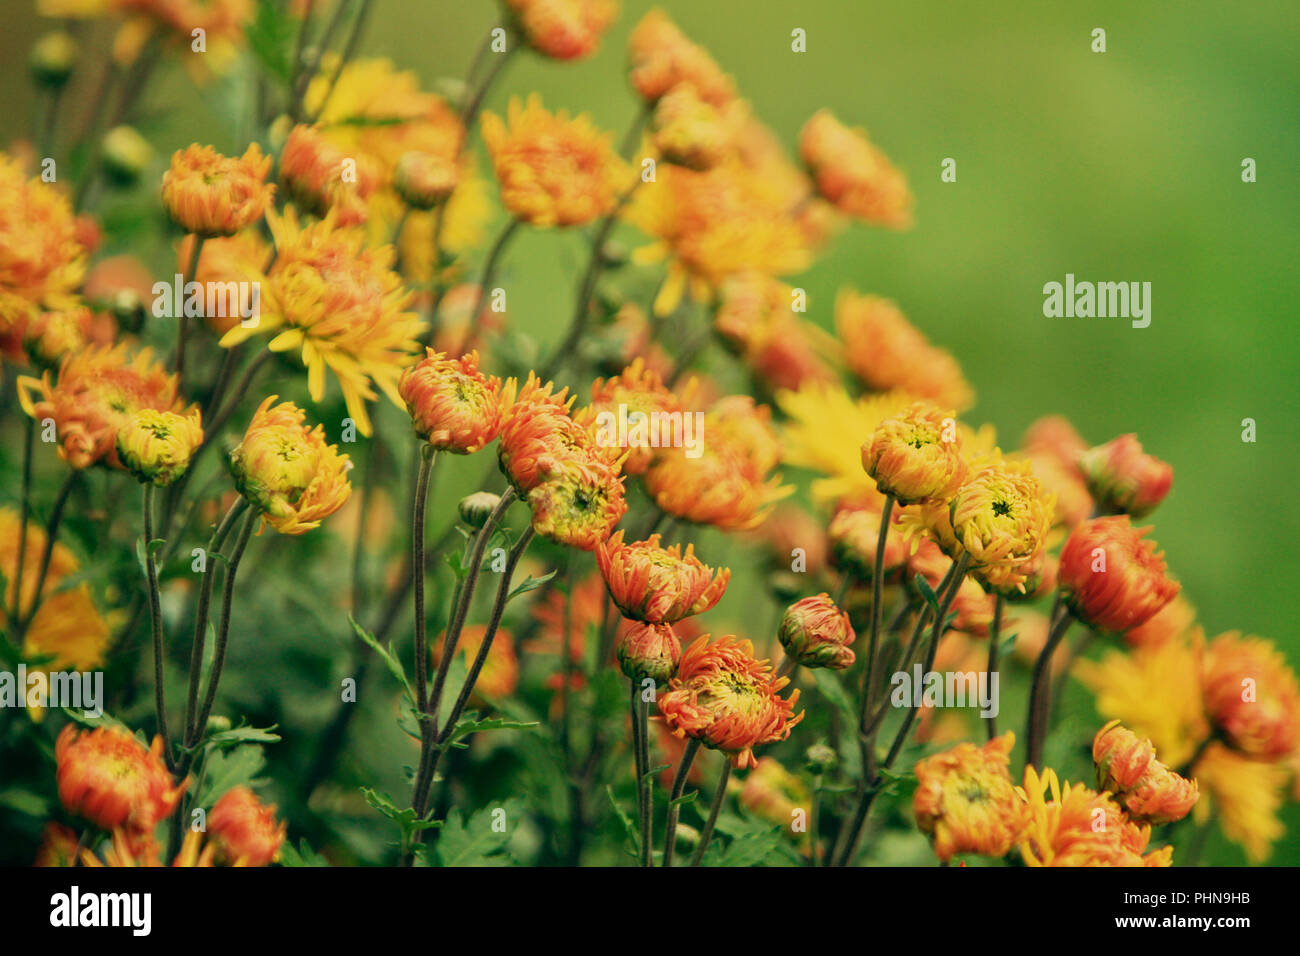 Chrysanthemum yellow orange flowers Stock Photo